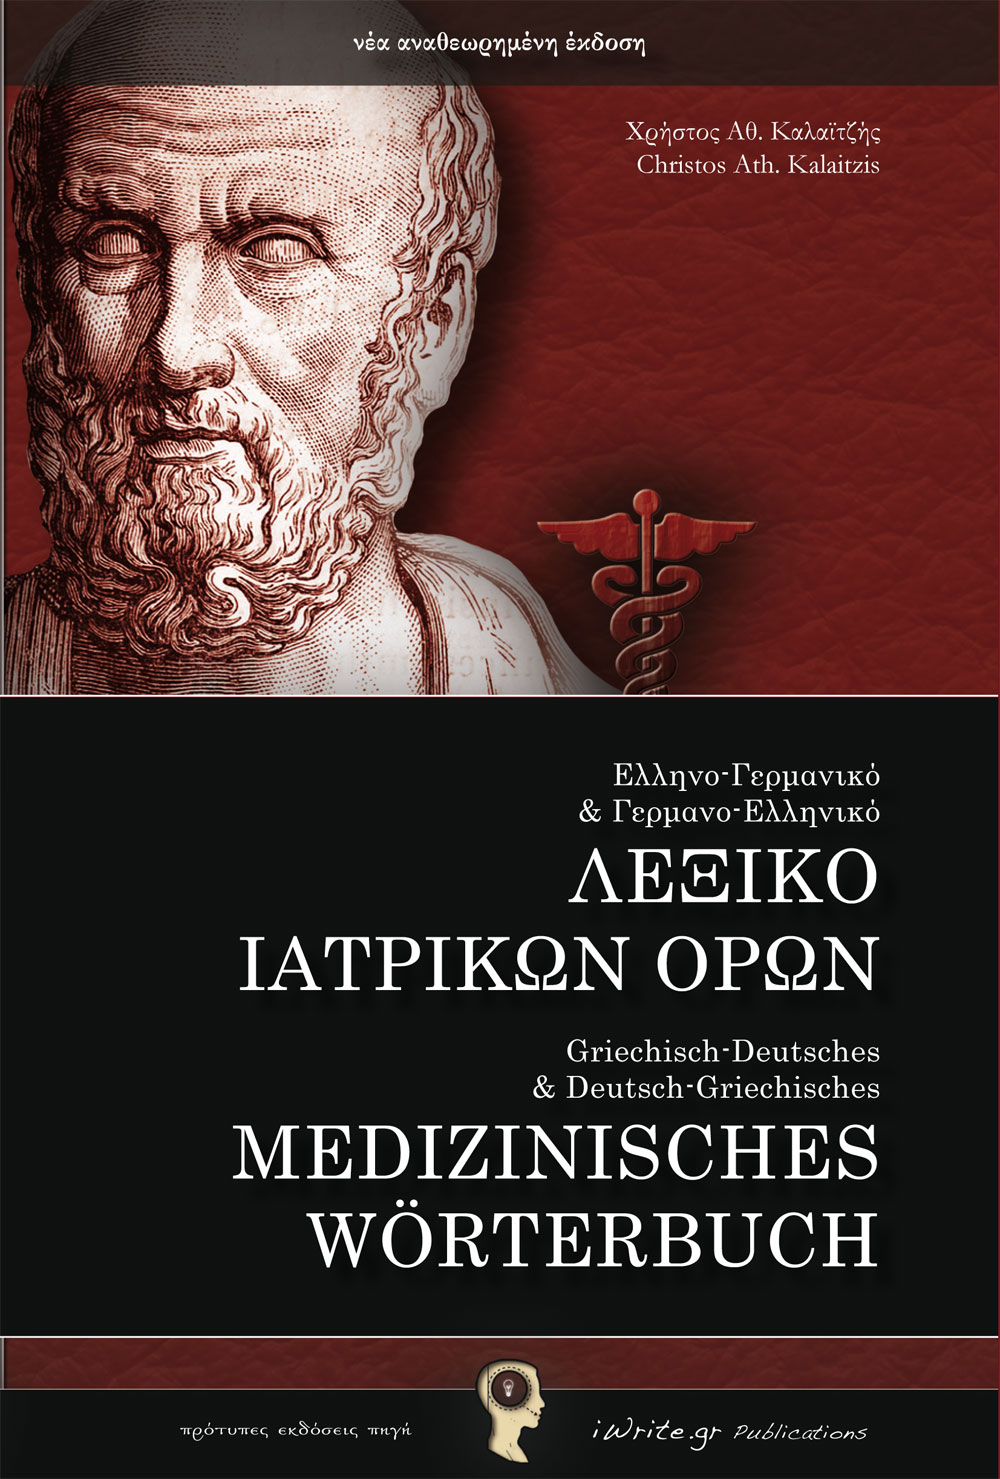 Εξώφυλλο, Λεξικό Ιατρικών Όρων, Εκδόσεις iWrite